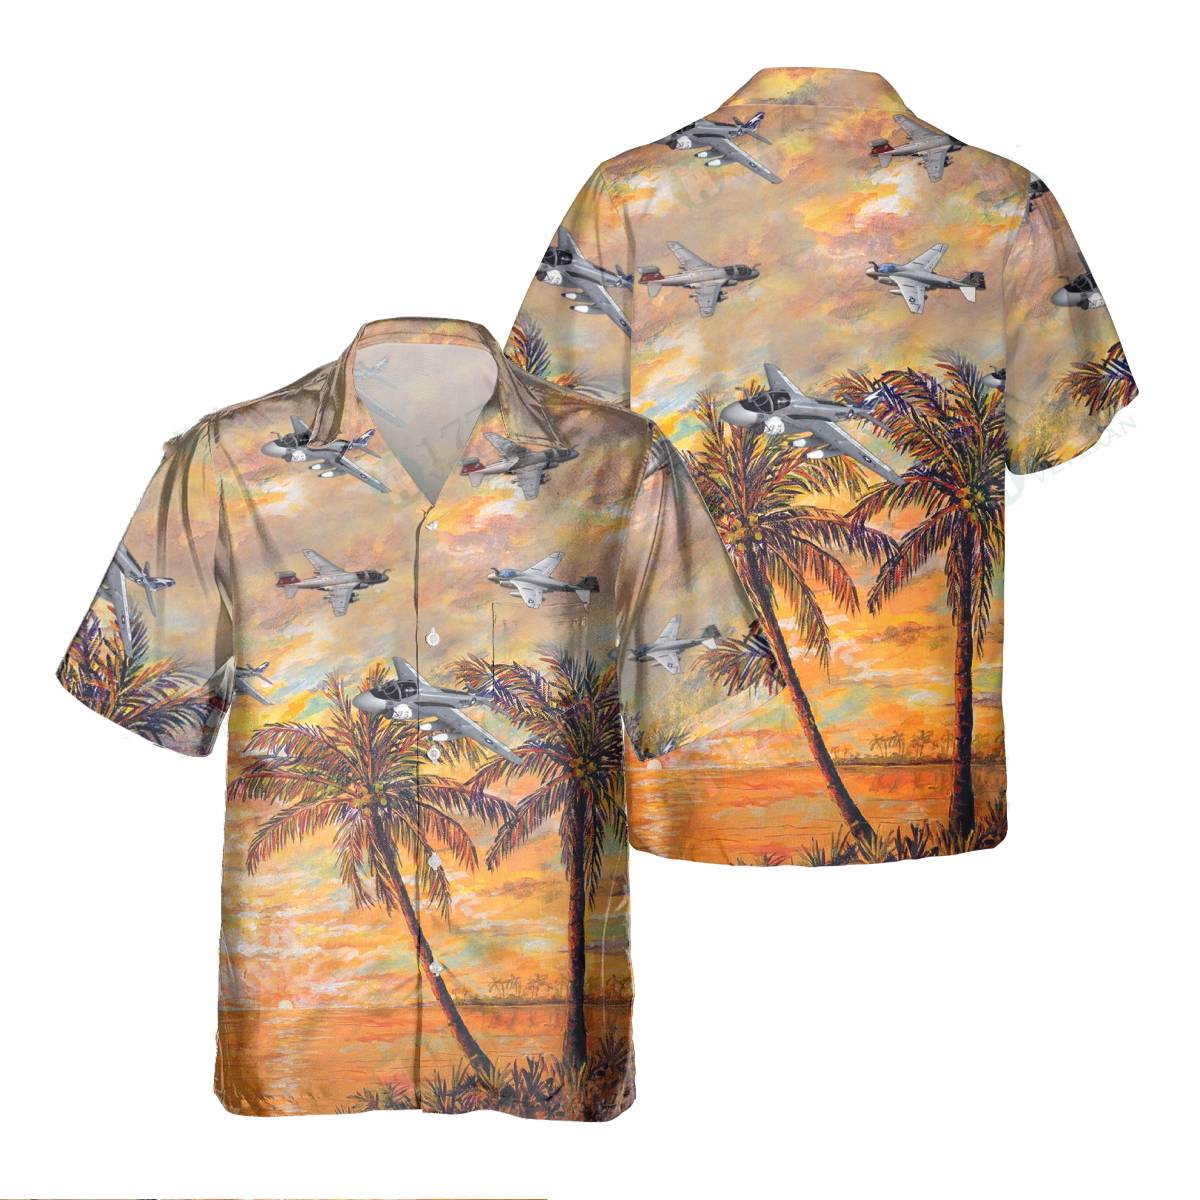 A-6 Intruder Pocket Hawaiian Shirt/ Hawaiian Shirt for Men Dad Veteran/ Patriot Day